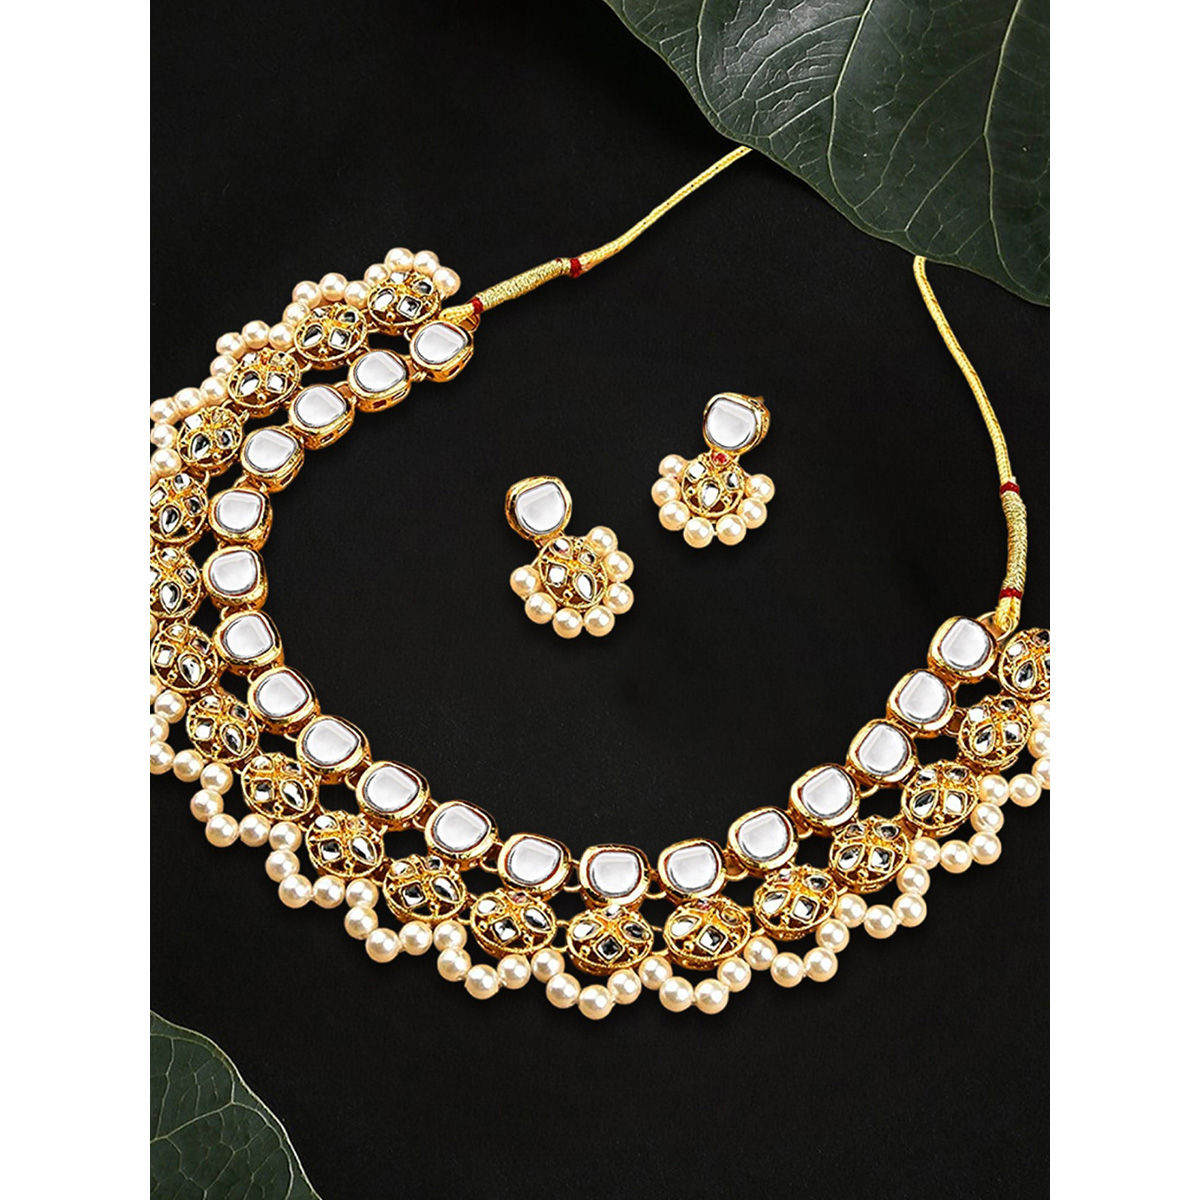 Buy Exquisite Red Diamond Colored Jewellery Set | Lehenga-Saree